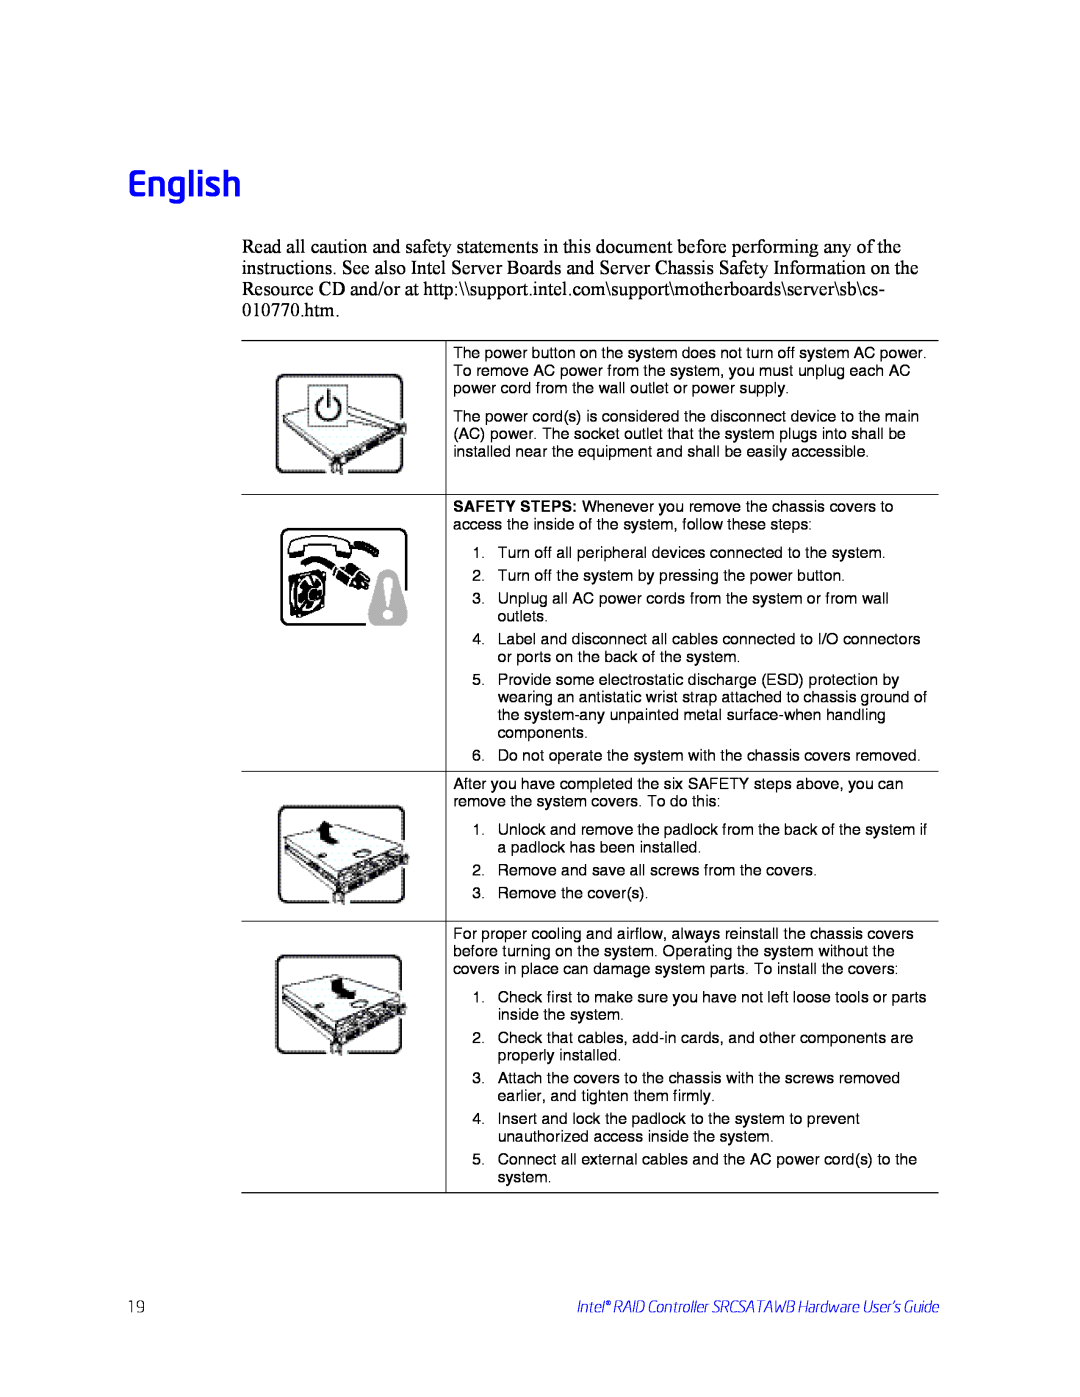 Intel SRCSATAWB manual English 